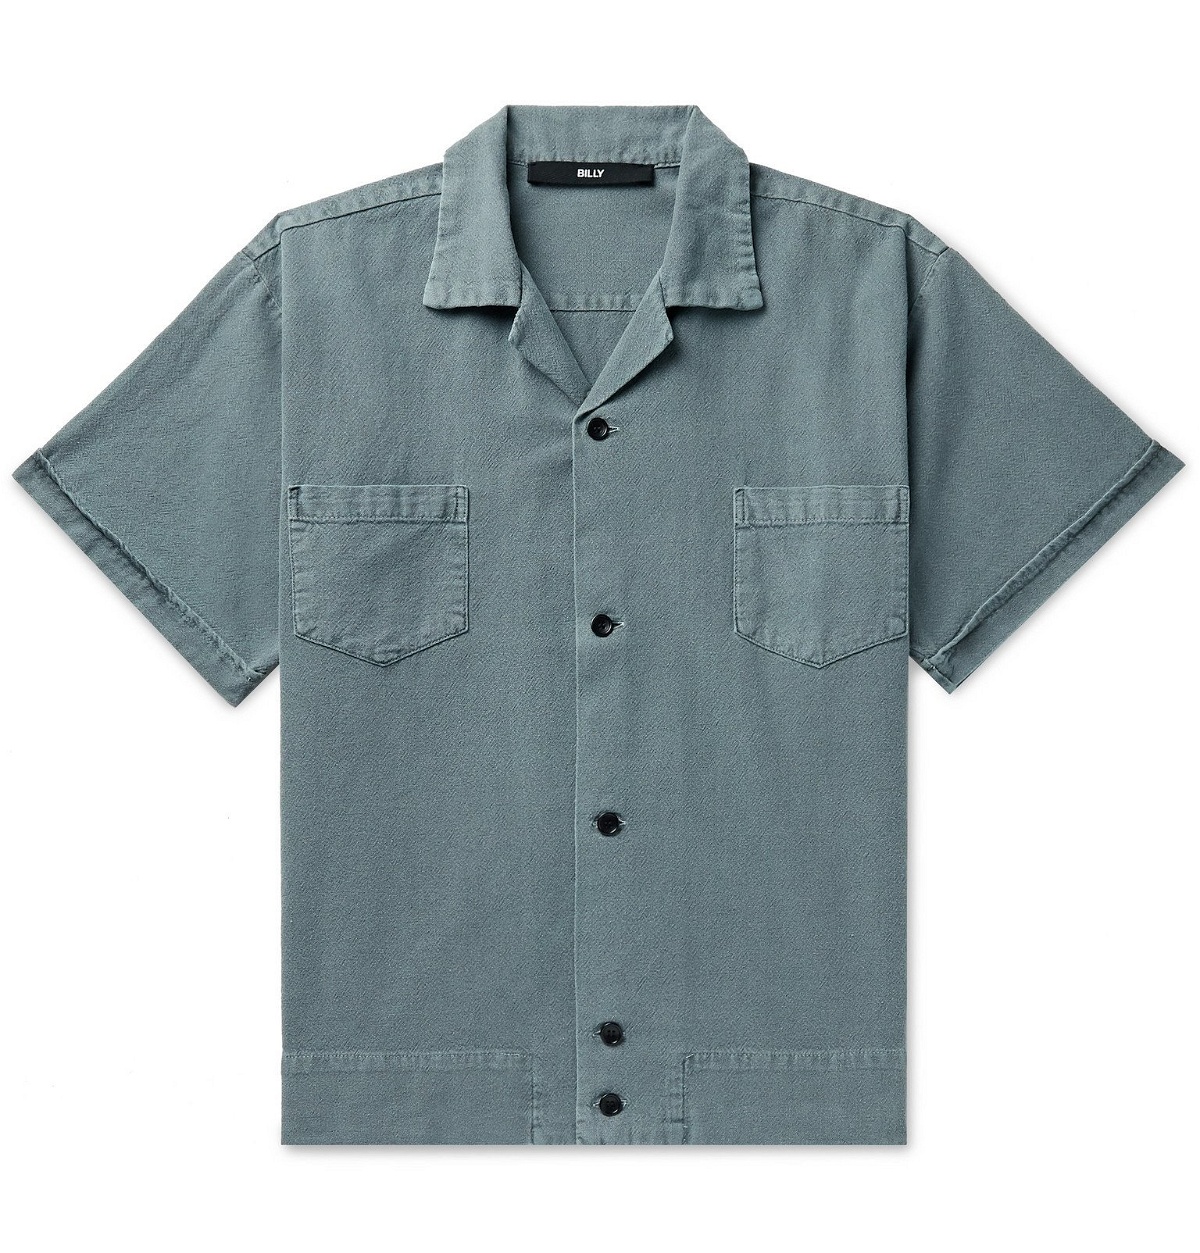 BILLY - Camp-Collar Cotton Shirt - Blue